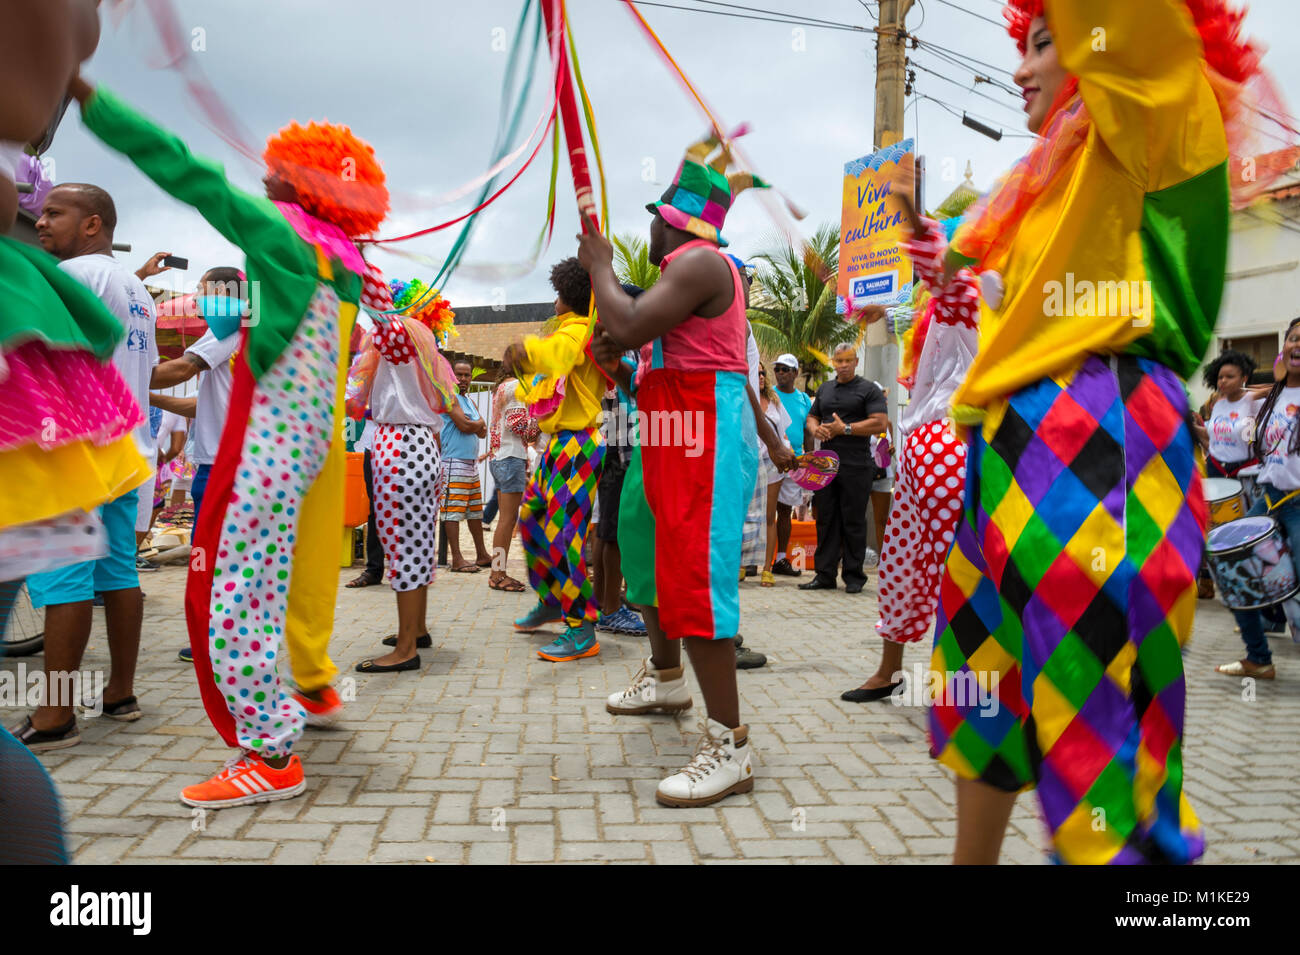 SALVADOR, BRASILIEN - ca. Februar 2016: die Menschen in bunten Kostümen feiern am jährlichen Festival der Yemanja in Rio Vermelho Nachbarschaft Stockfoto